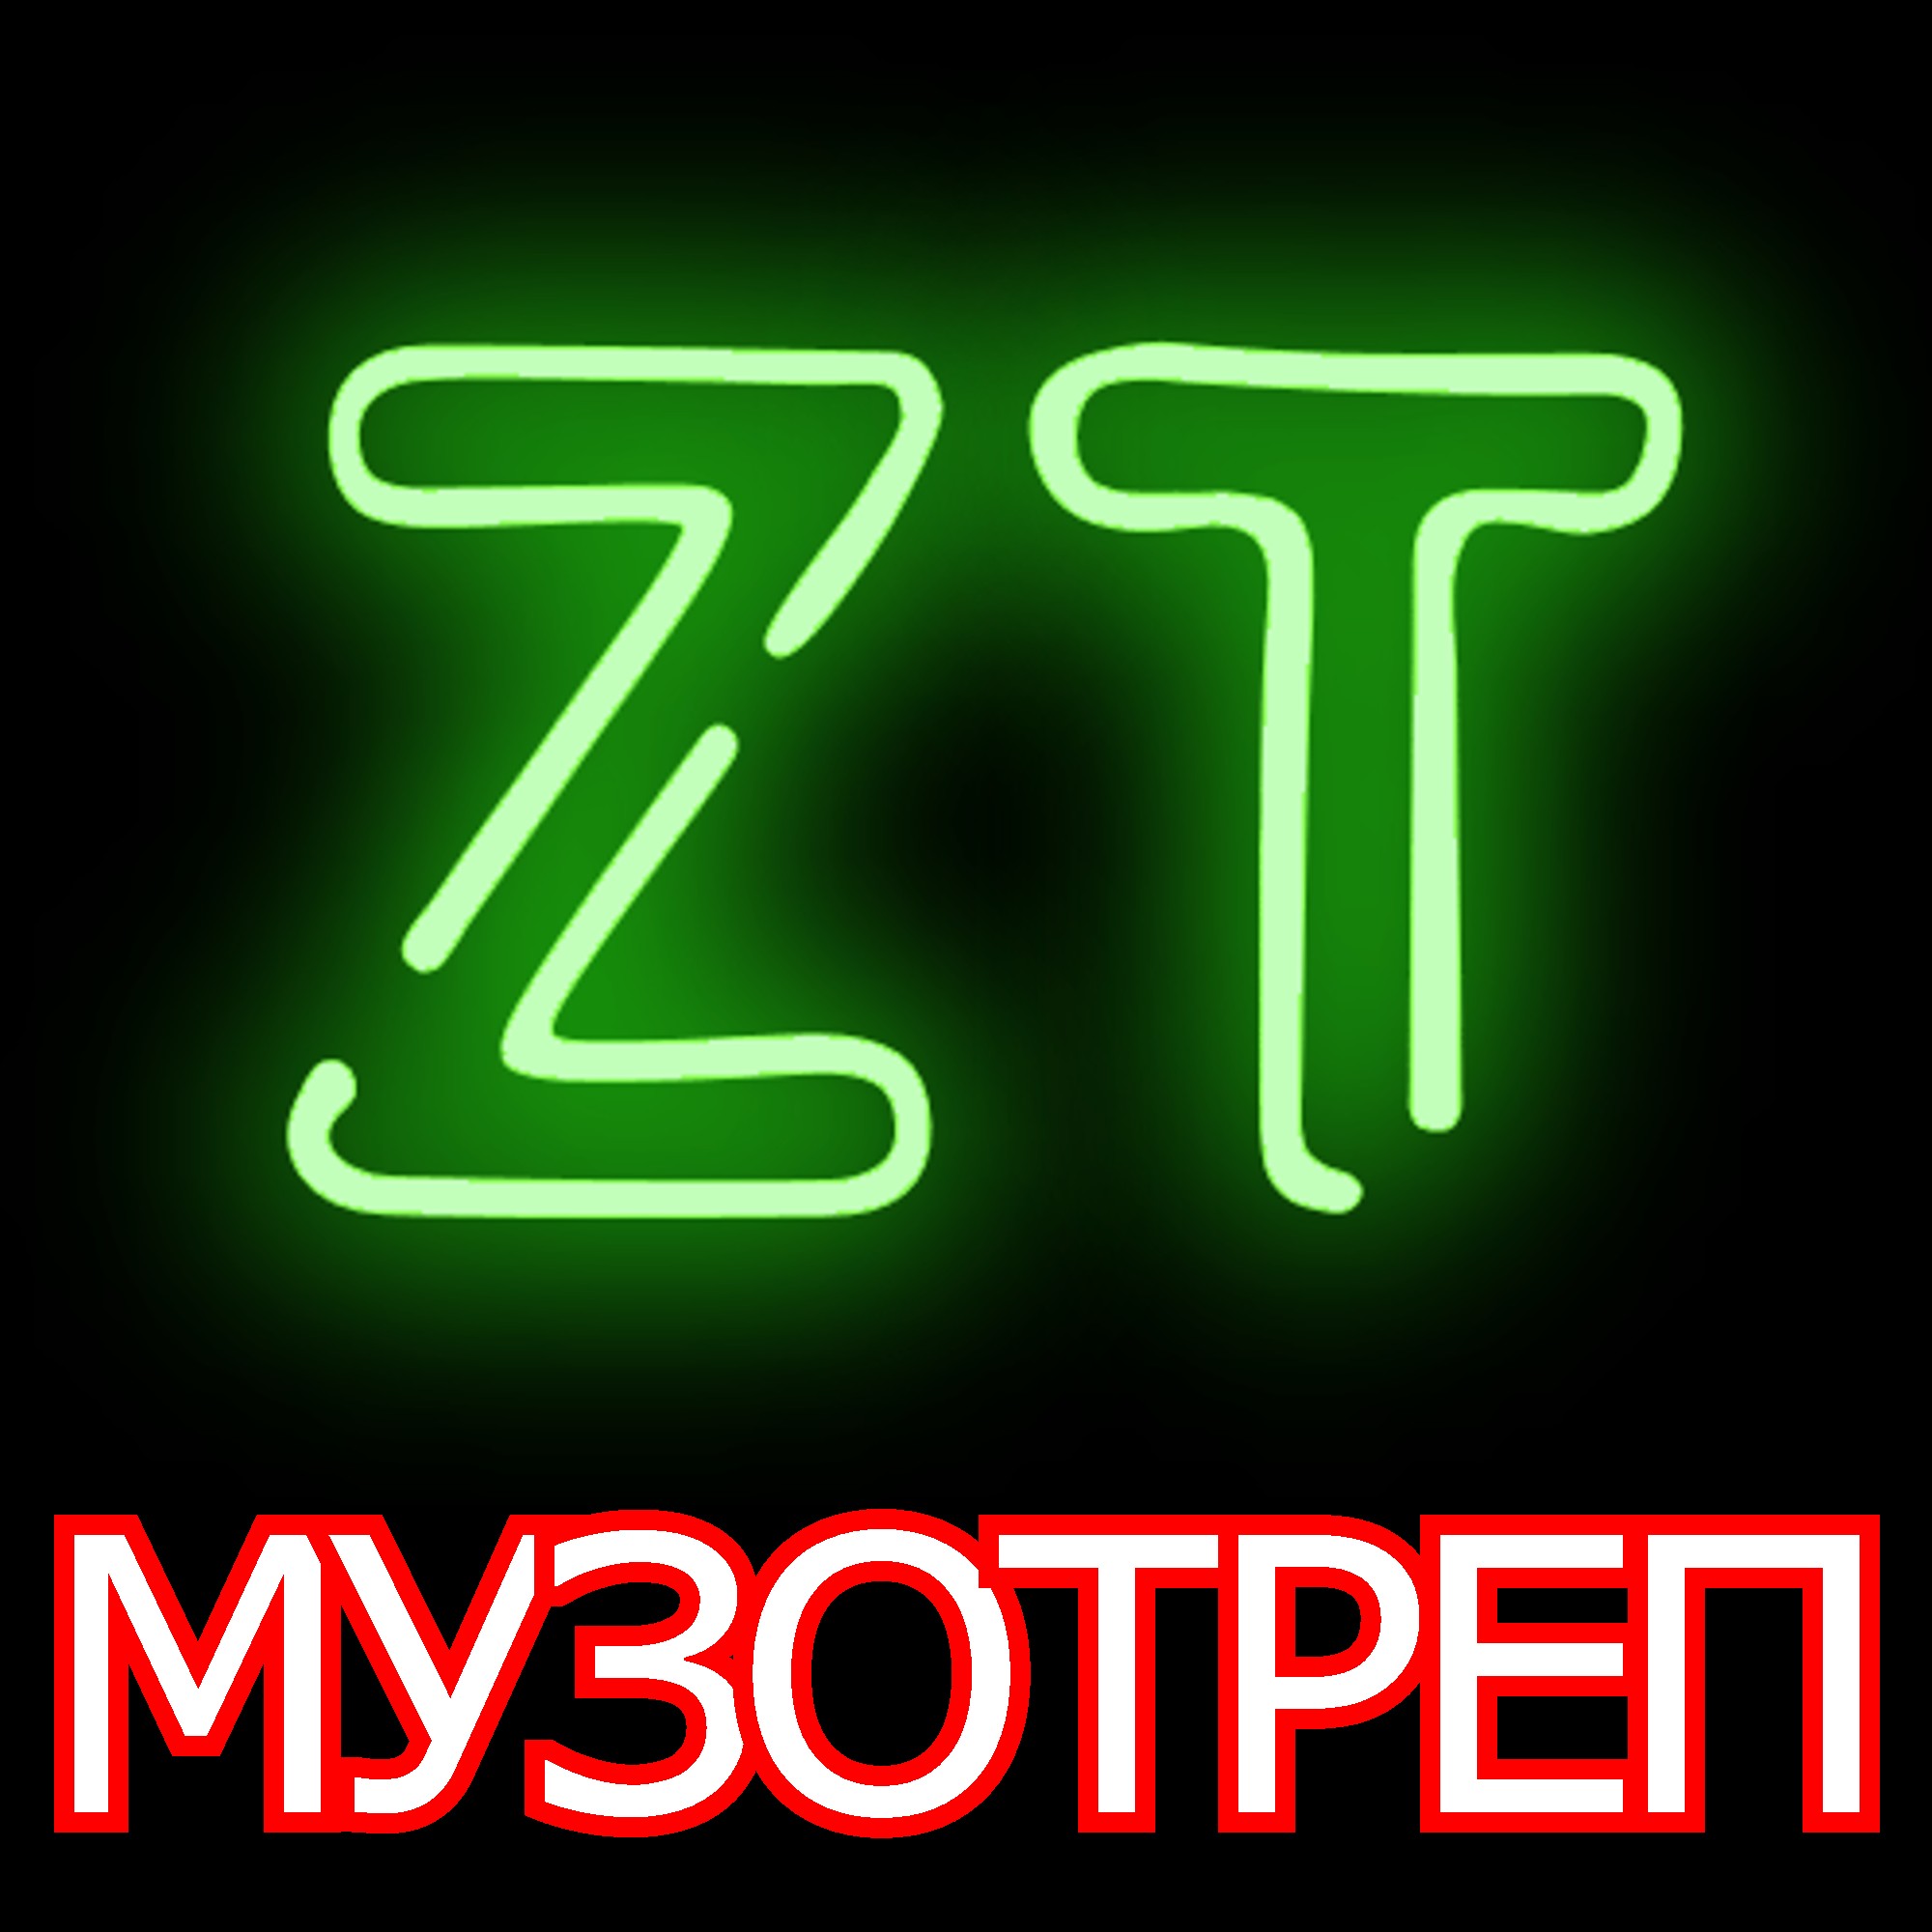 МУЗОТРЕП #1 | гость: Дмитрий ГАЗИЗОВ | Музыкально-разговорный подкаст | Zatakt